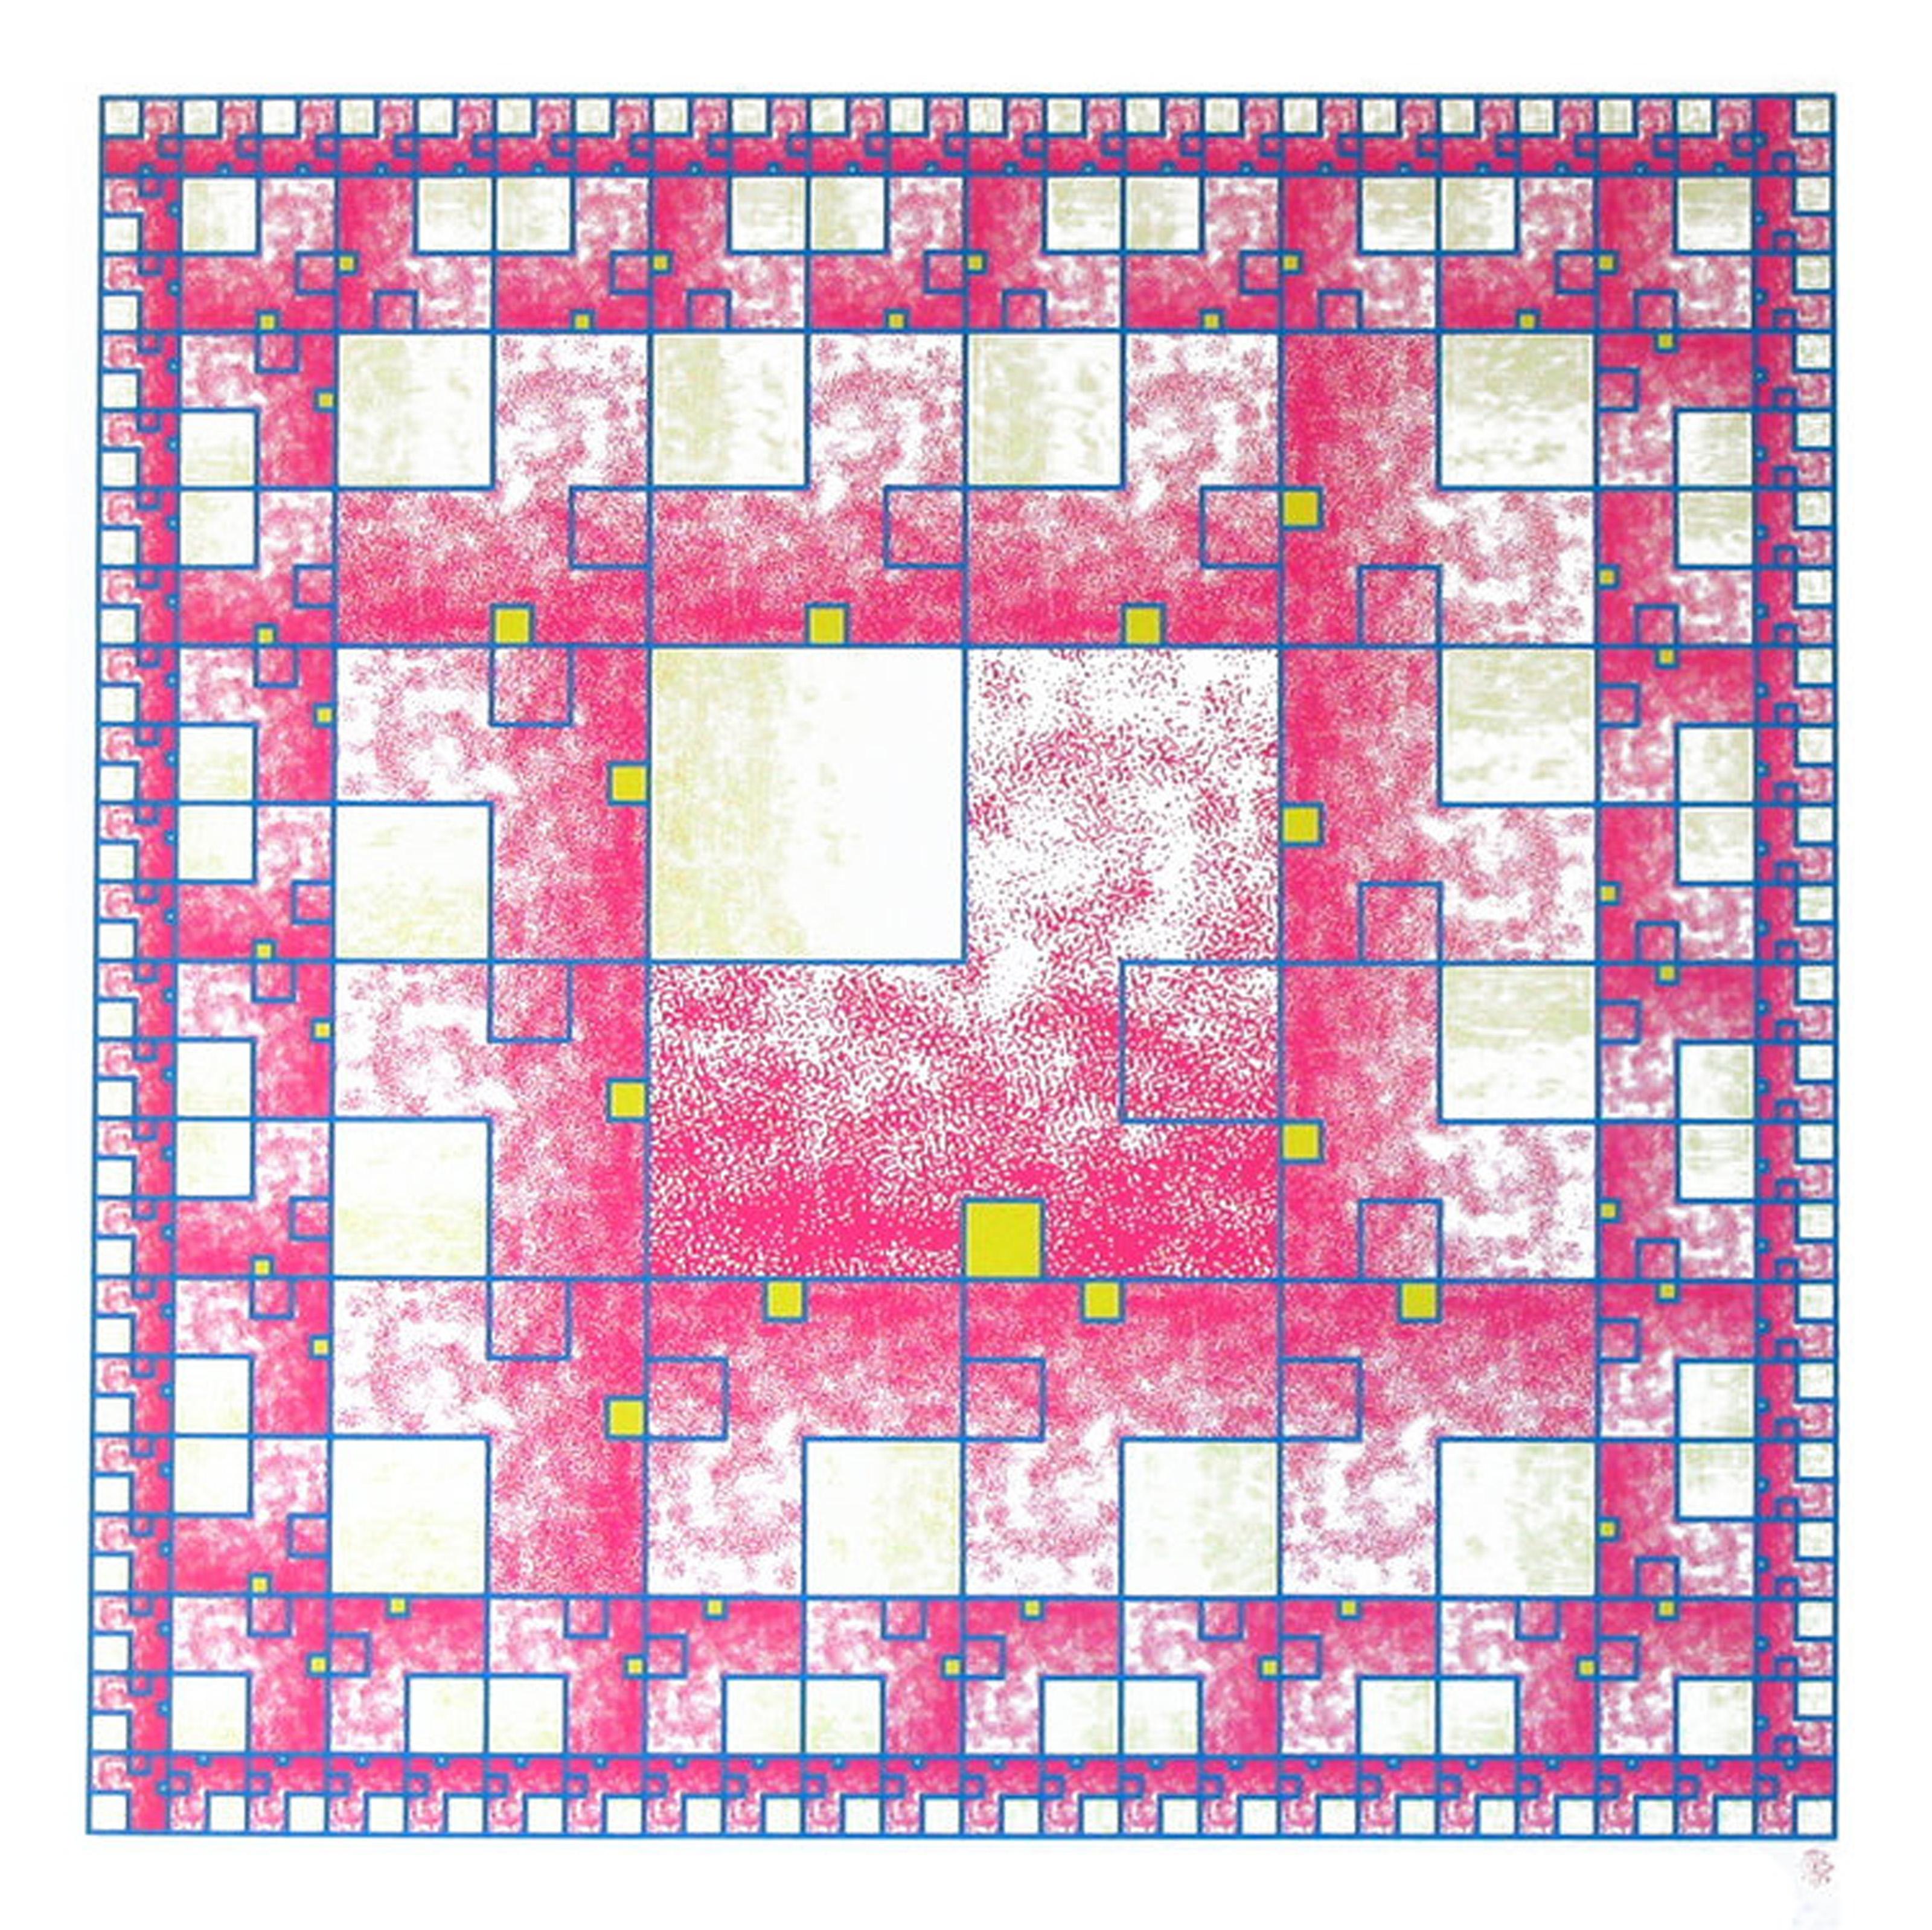 Ein geometrisch abstrakter Druck des japanischen Künstlers Takaaki Matsumoto. 

Computer
Takaaki Matsumoto, Japaner (1954)
Datum: 1991
Siebdruck
Auflage von 198
Größe: 24 x 24 Zoll (60,96 x 60,96 cm)